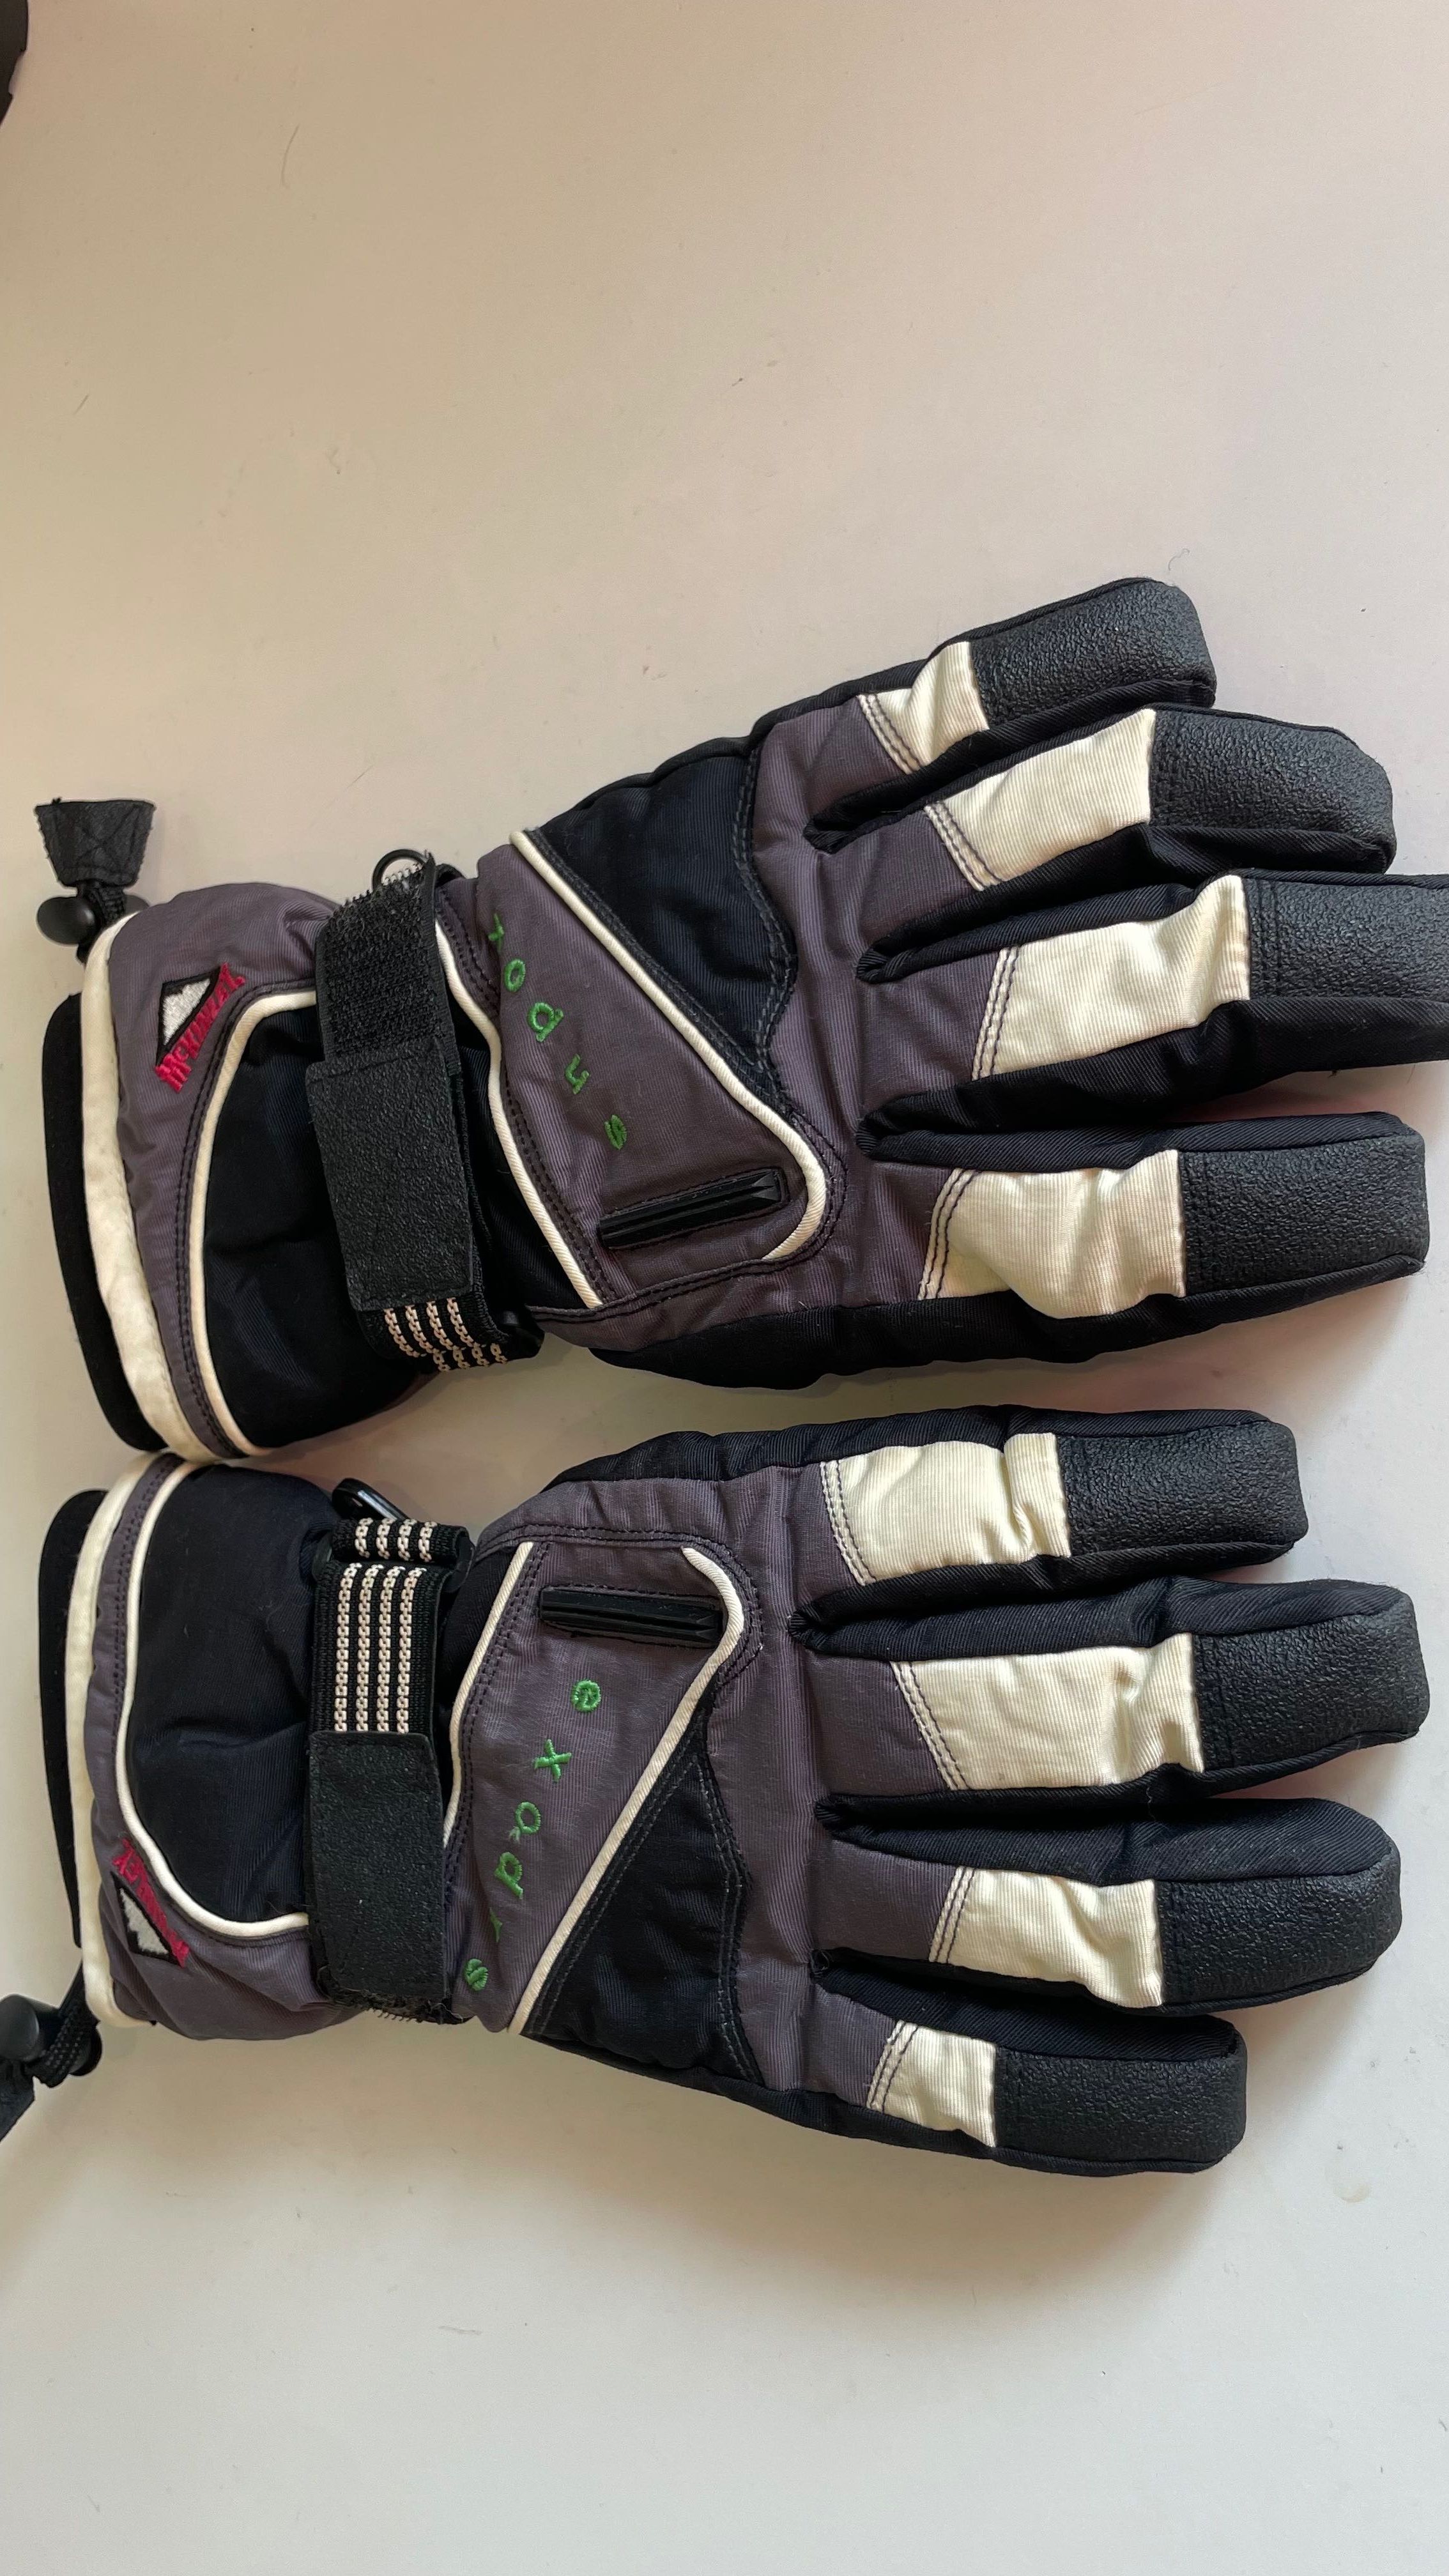 Rękawice narciarskie McKinley roz 7 - M/L jak nowe